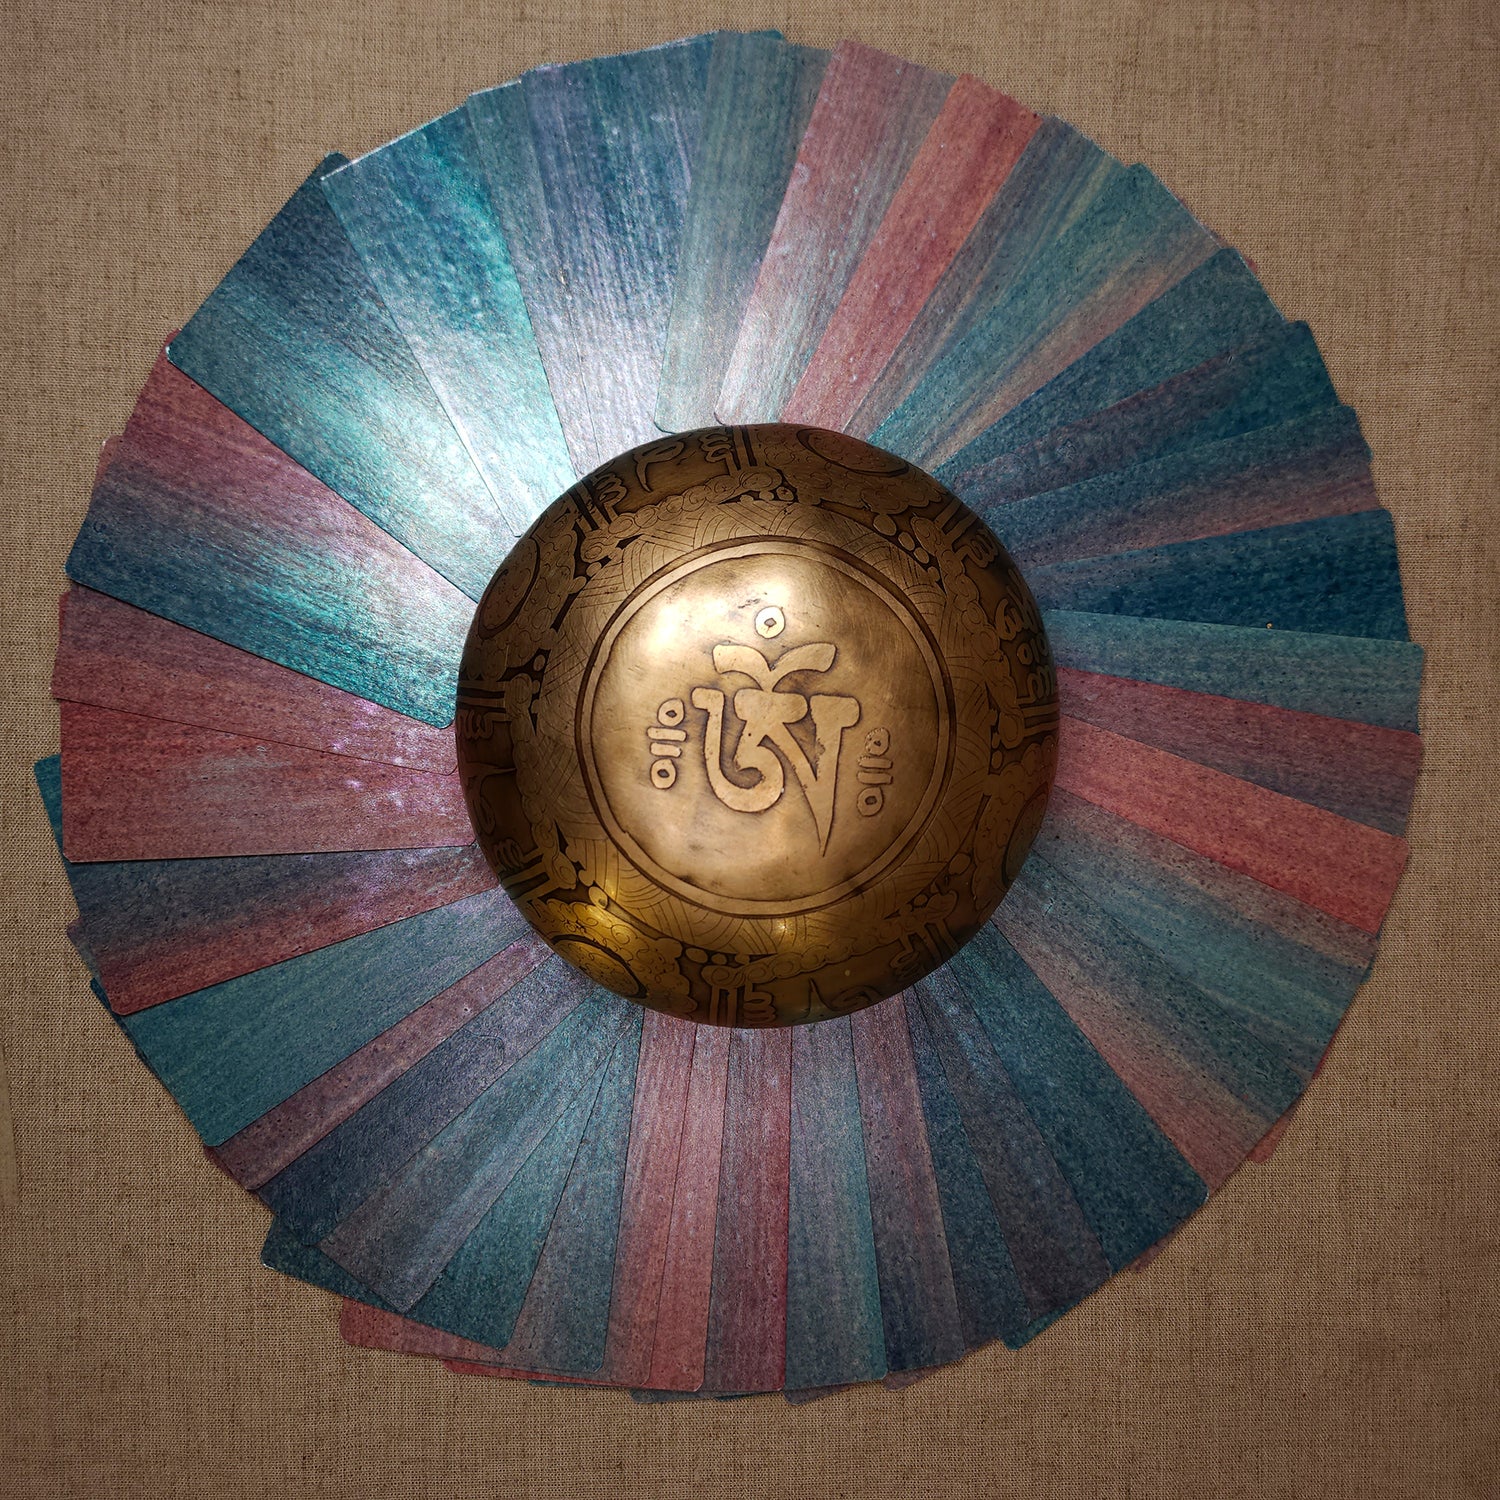 une couronne de cartes au couleurs irisée et nacrées entouran un bol tibétain portant le signe OM 